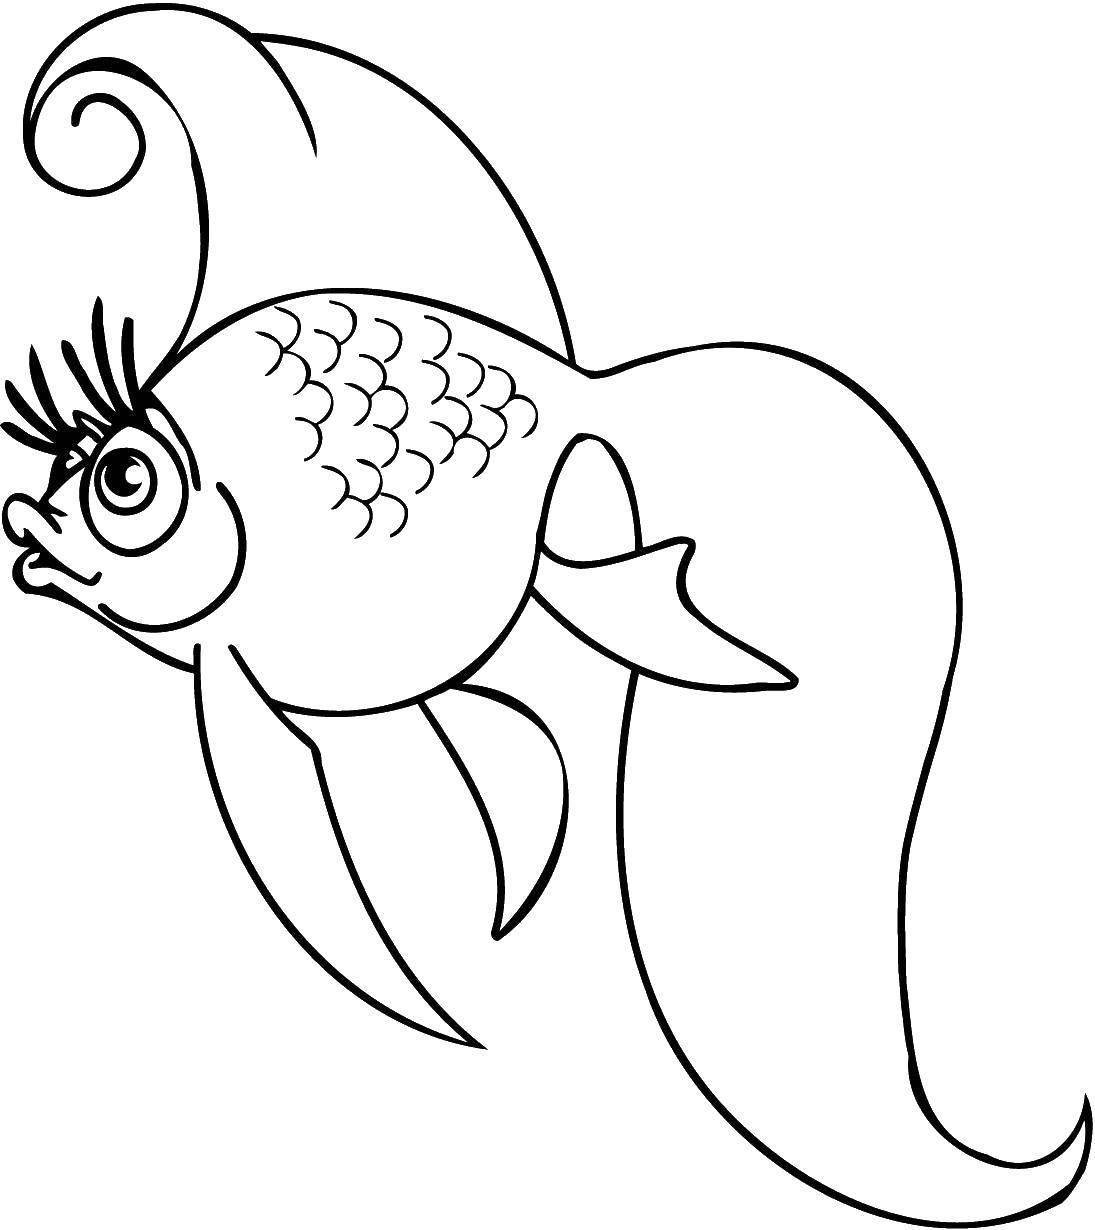 Coloring Goldfish with eyelashes. Category fish. Tags:  Underwater world, fish, goldfish.